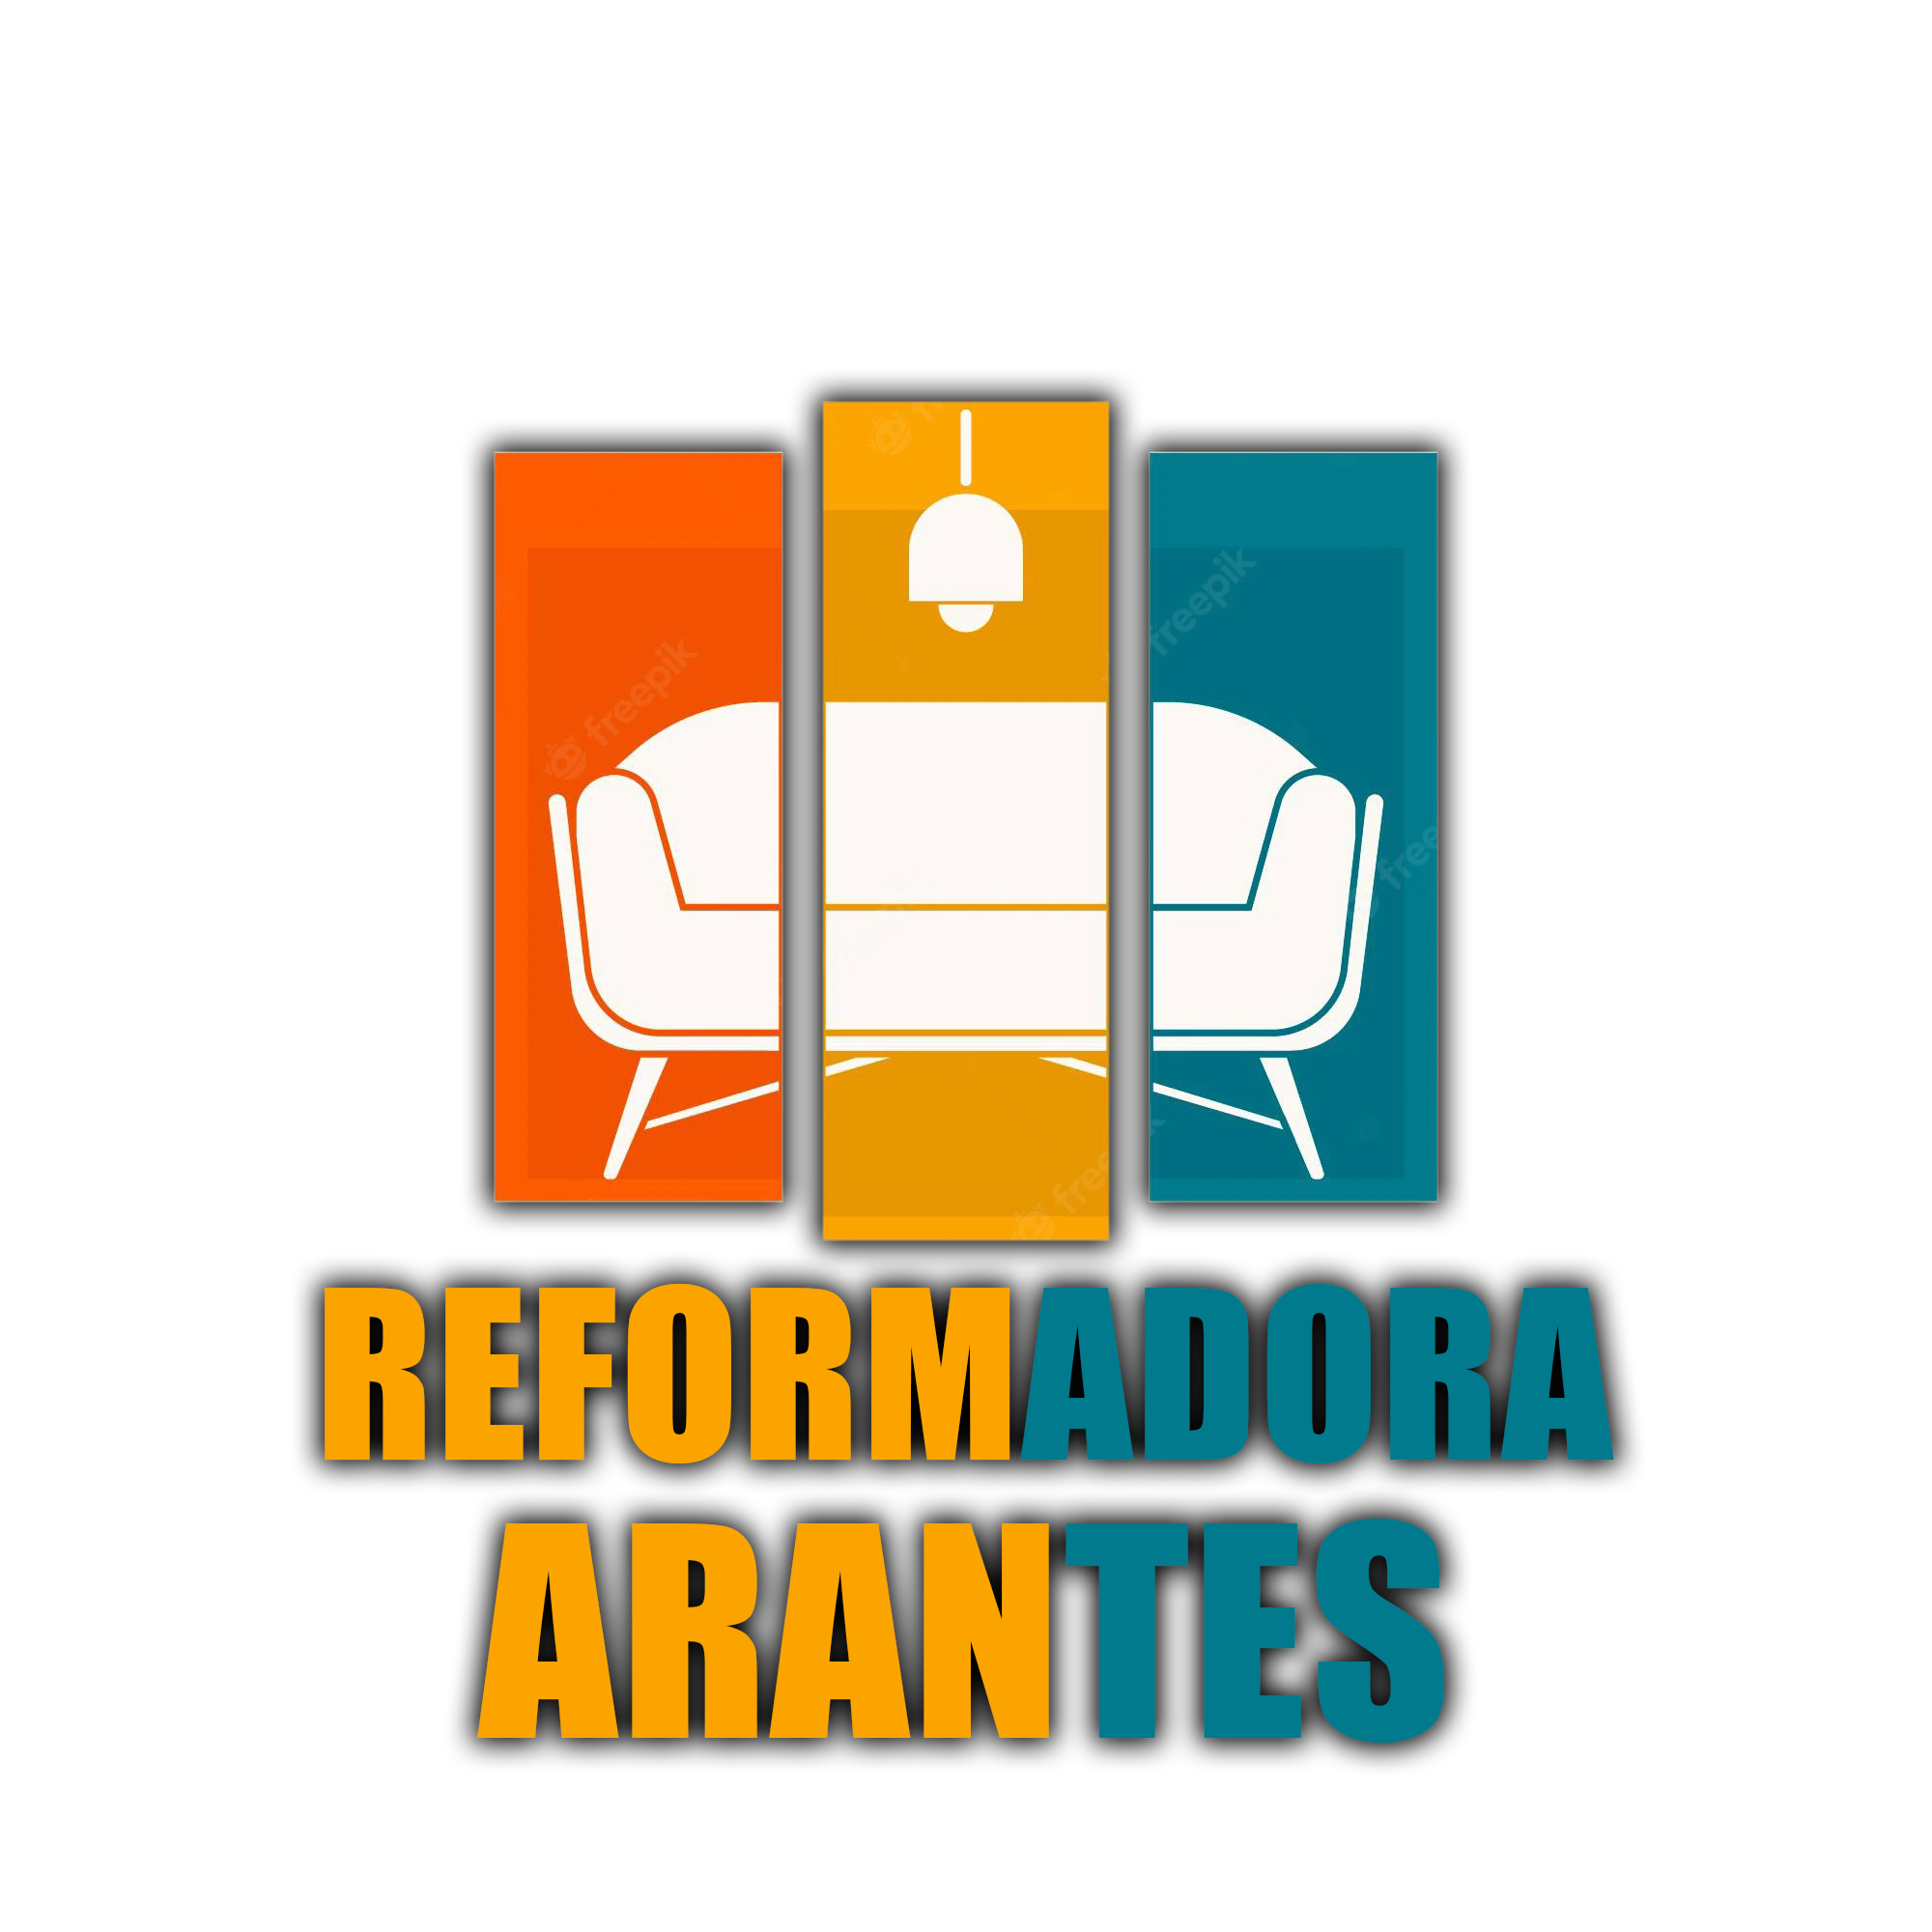 REFORMADORA DE ESTOFADOS ARANTES